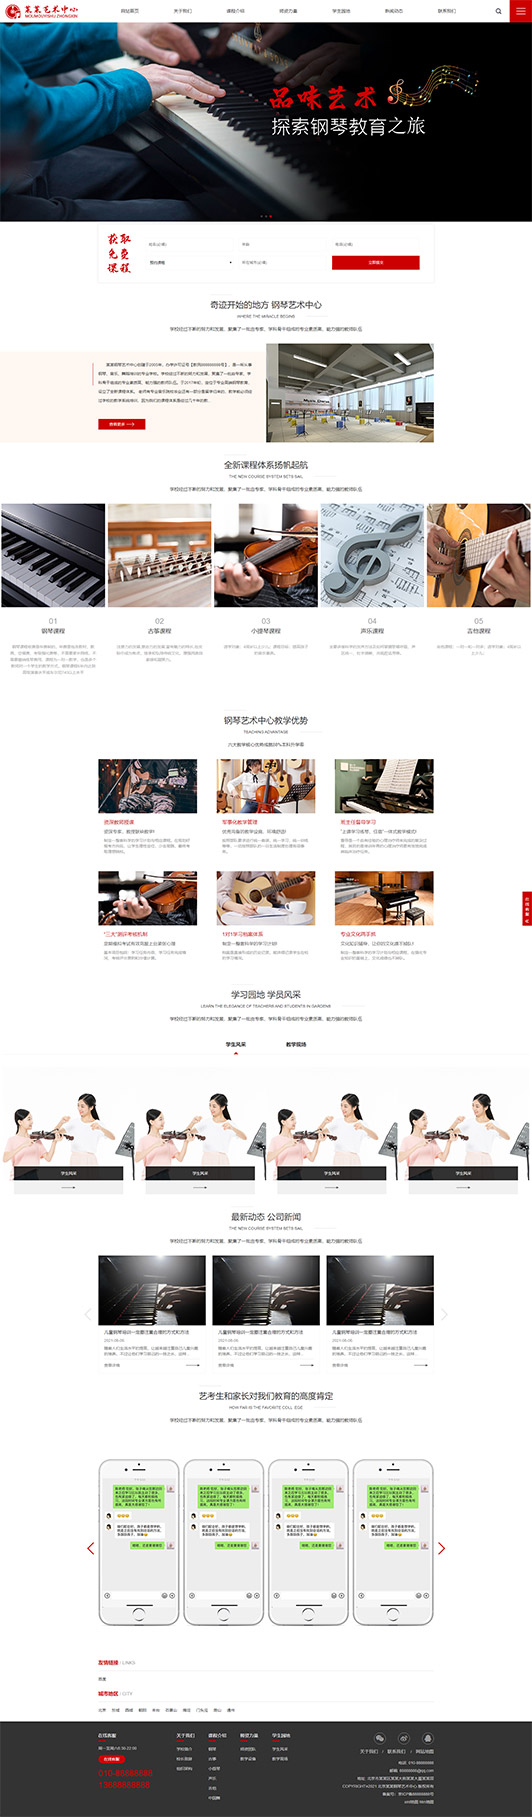 贵州钢琴艺术培训公司响应式企业网站